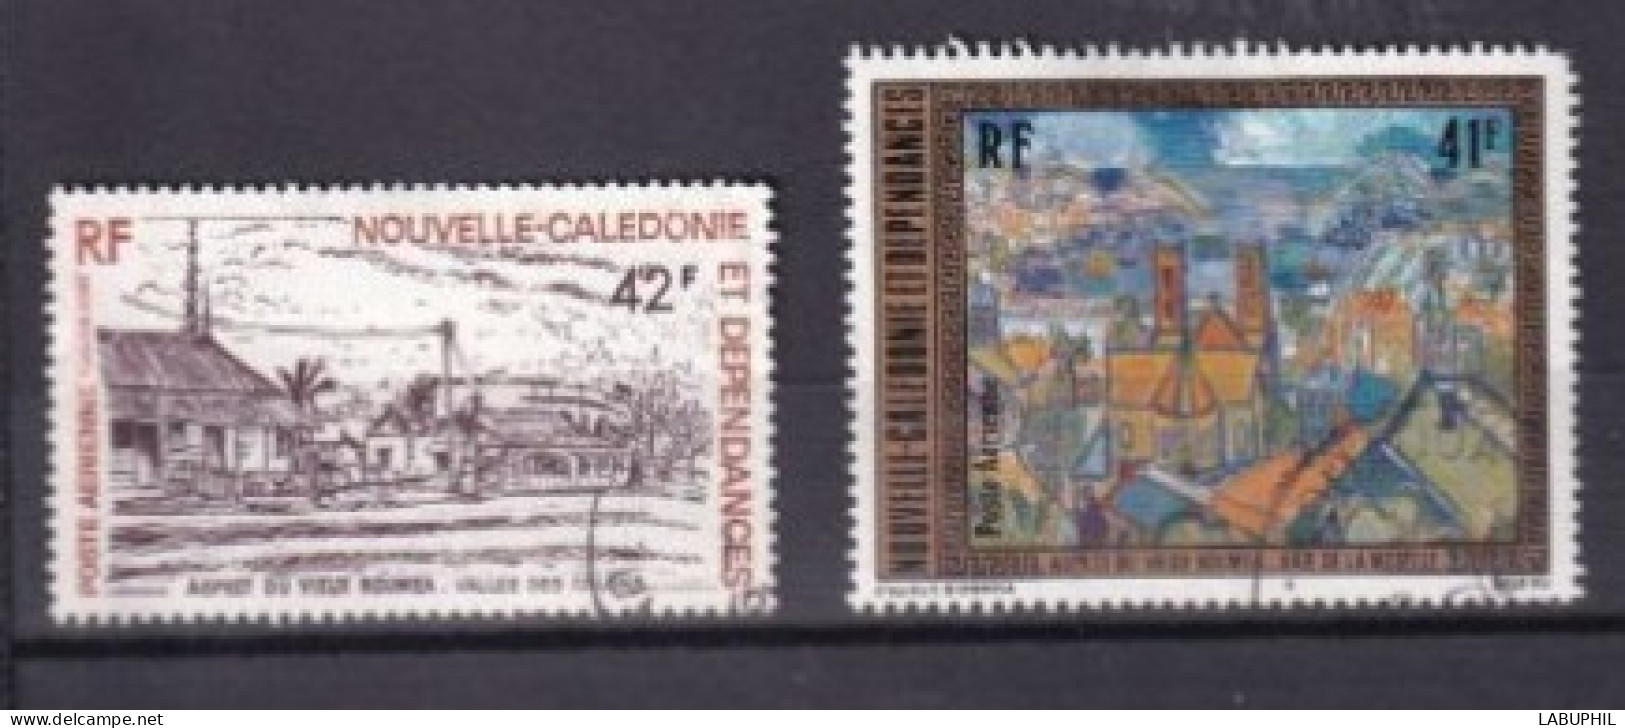 NOUVELLE CALEDONIE Dispersion D'une Collection Oblitéré Used  1977 - Oblitérés